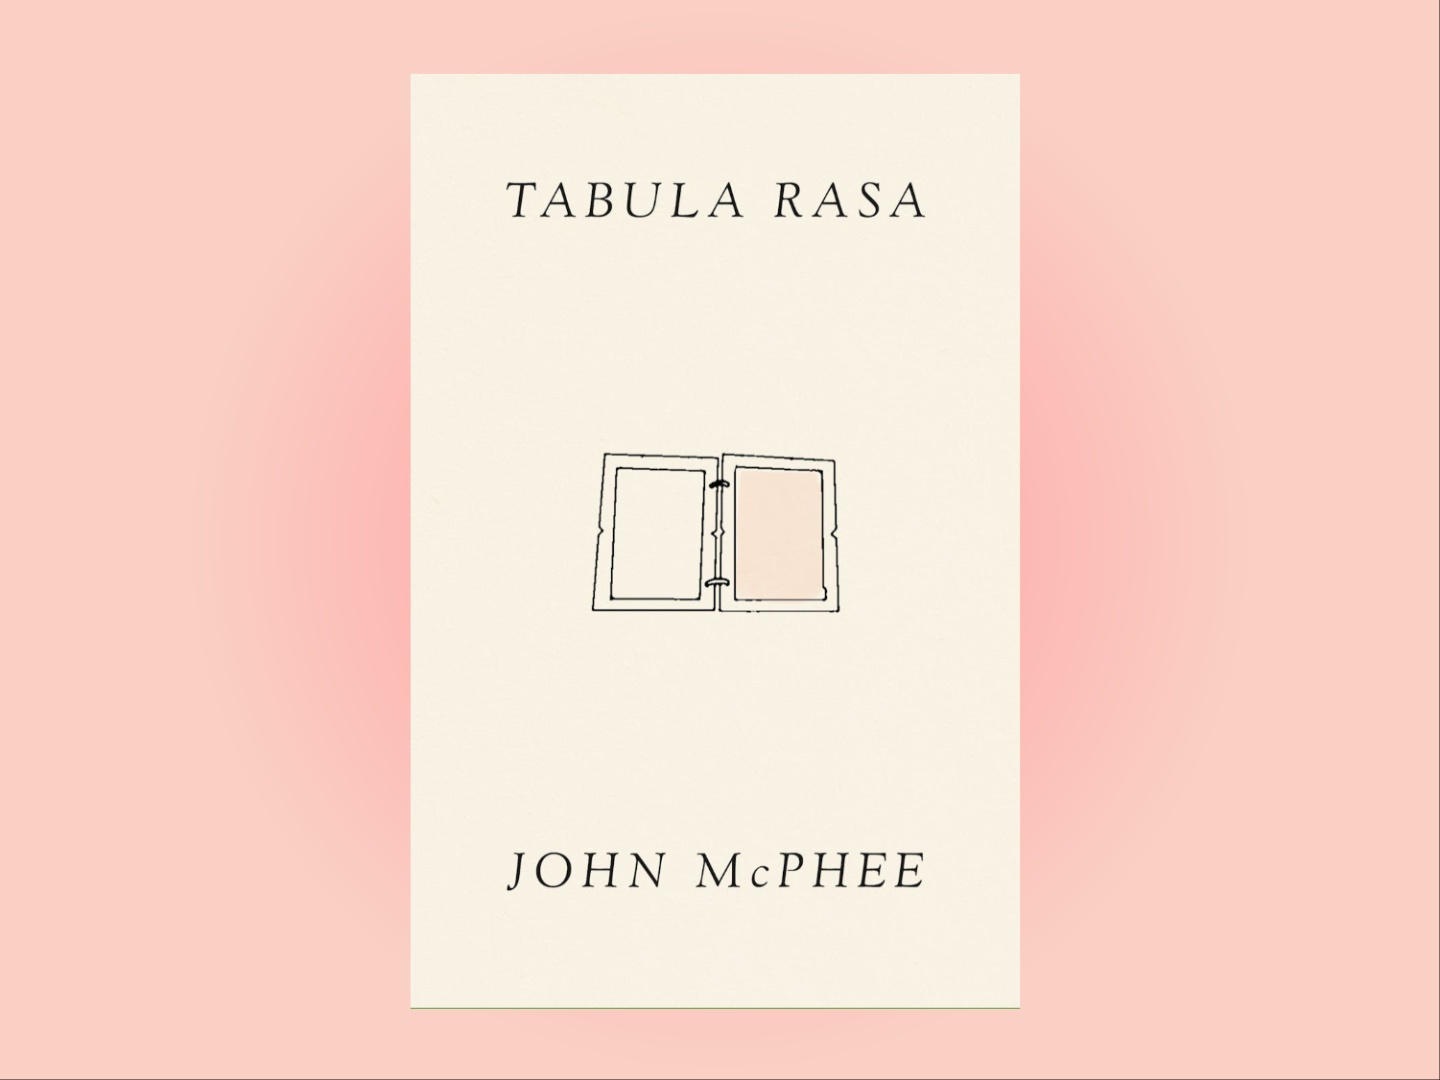 John McPhee's Tabula Rasa